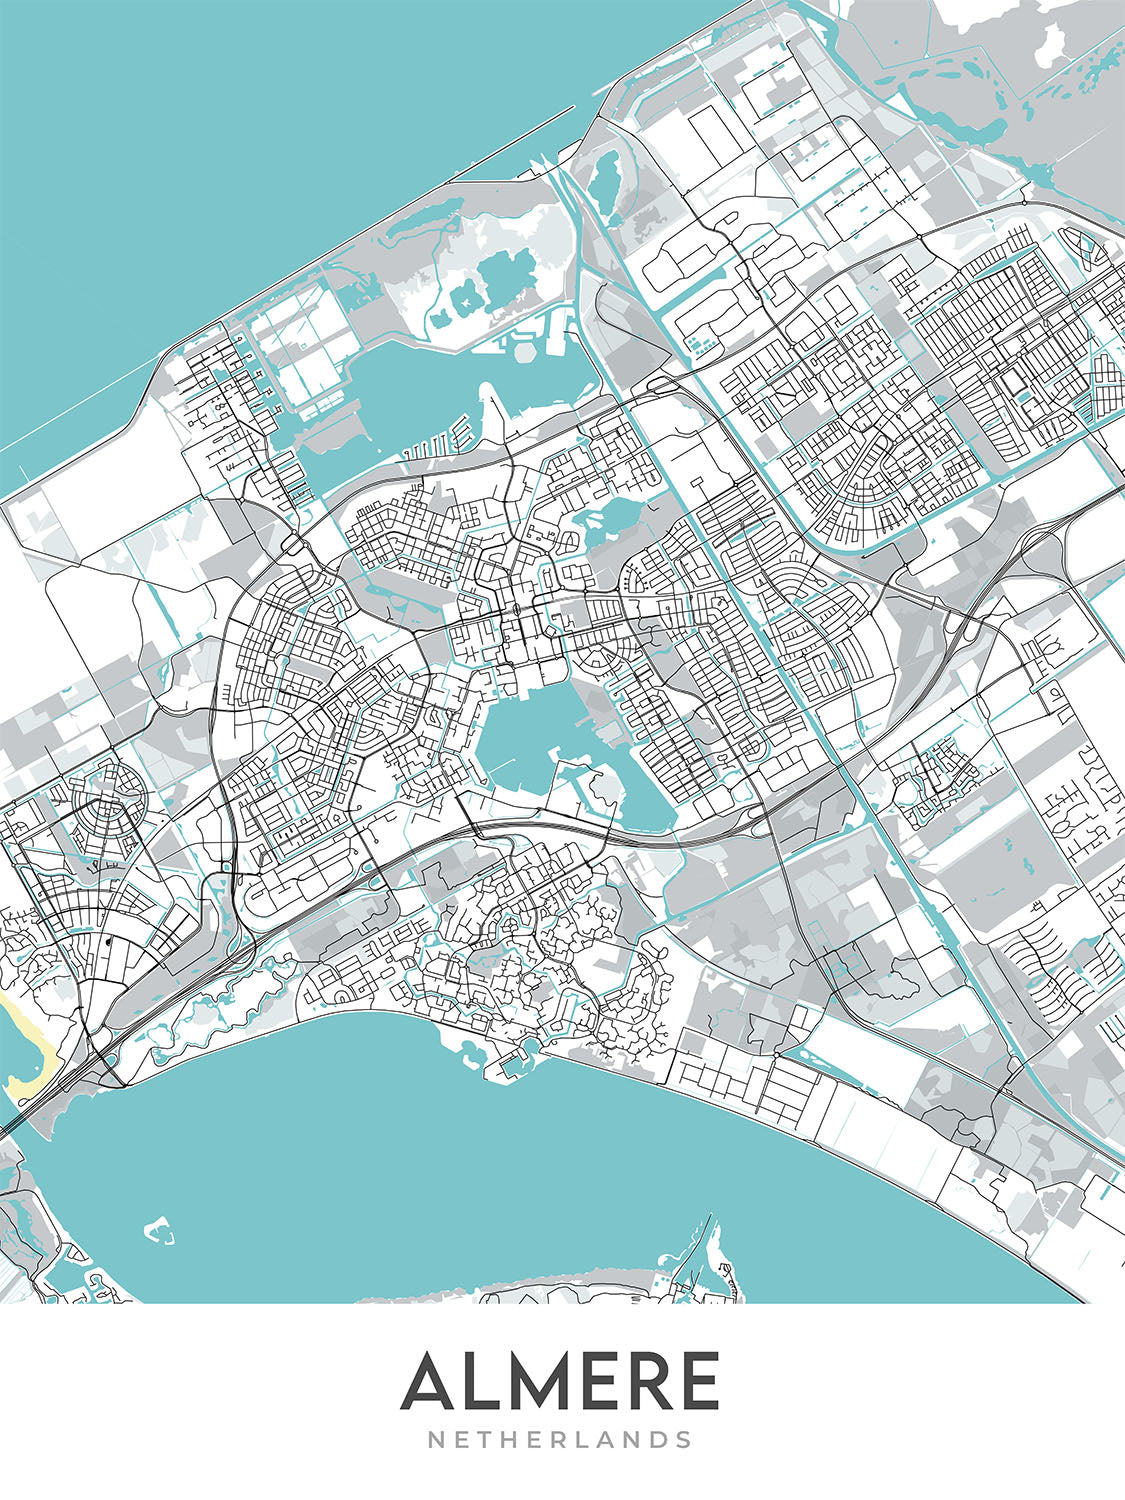 Plan de la ville moderne d'Almere, Pays-Bas : Almere Stad, Almere Centrum, De Observant, A6, N702